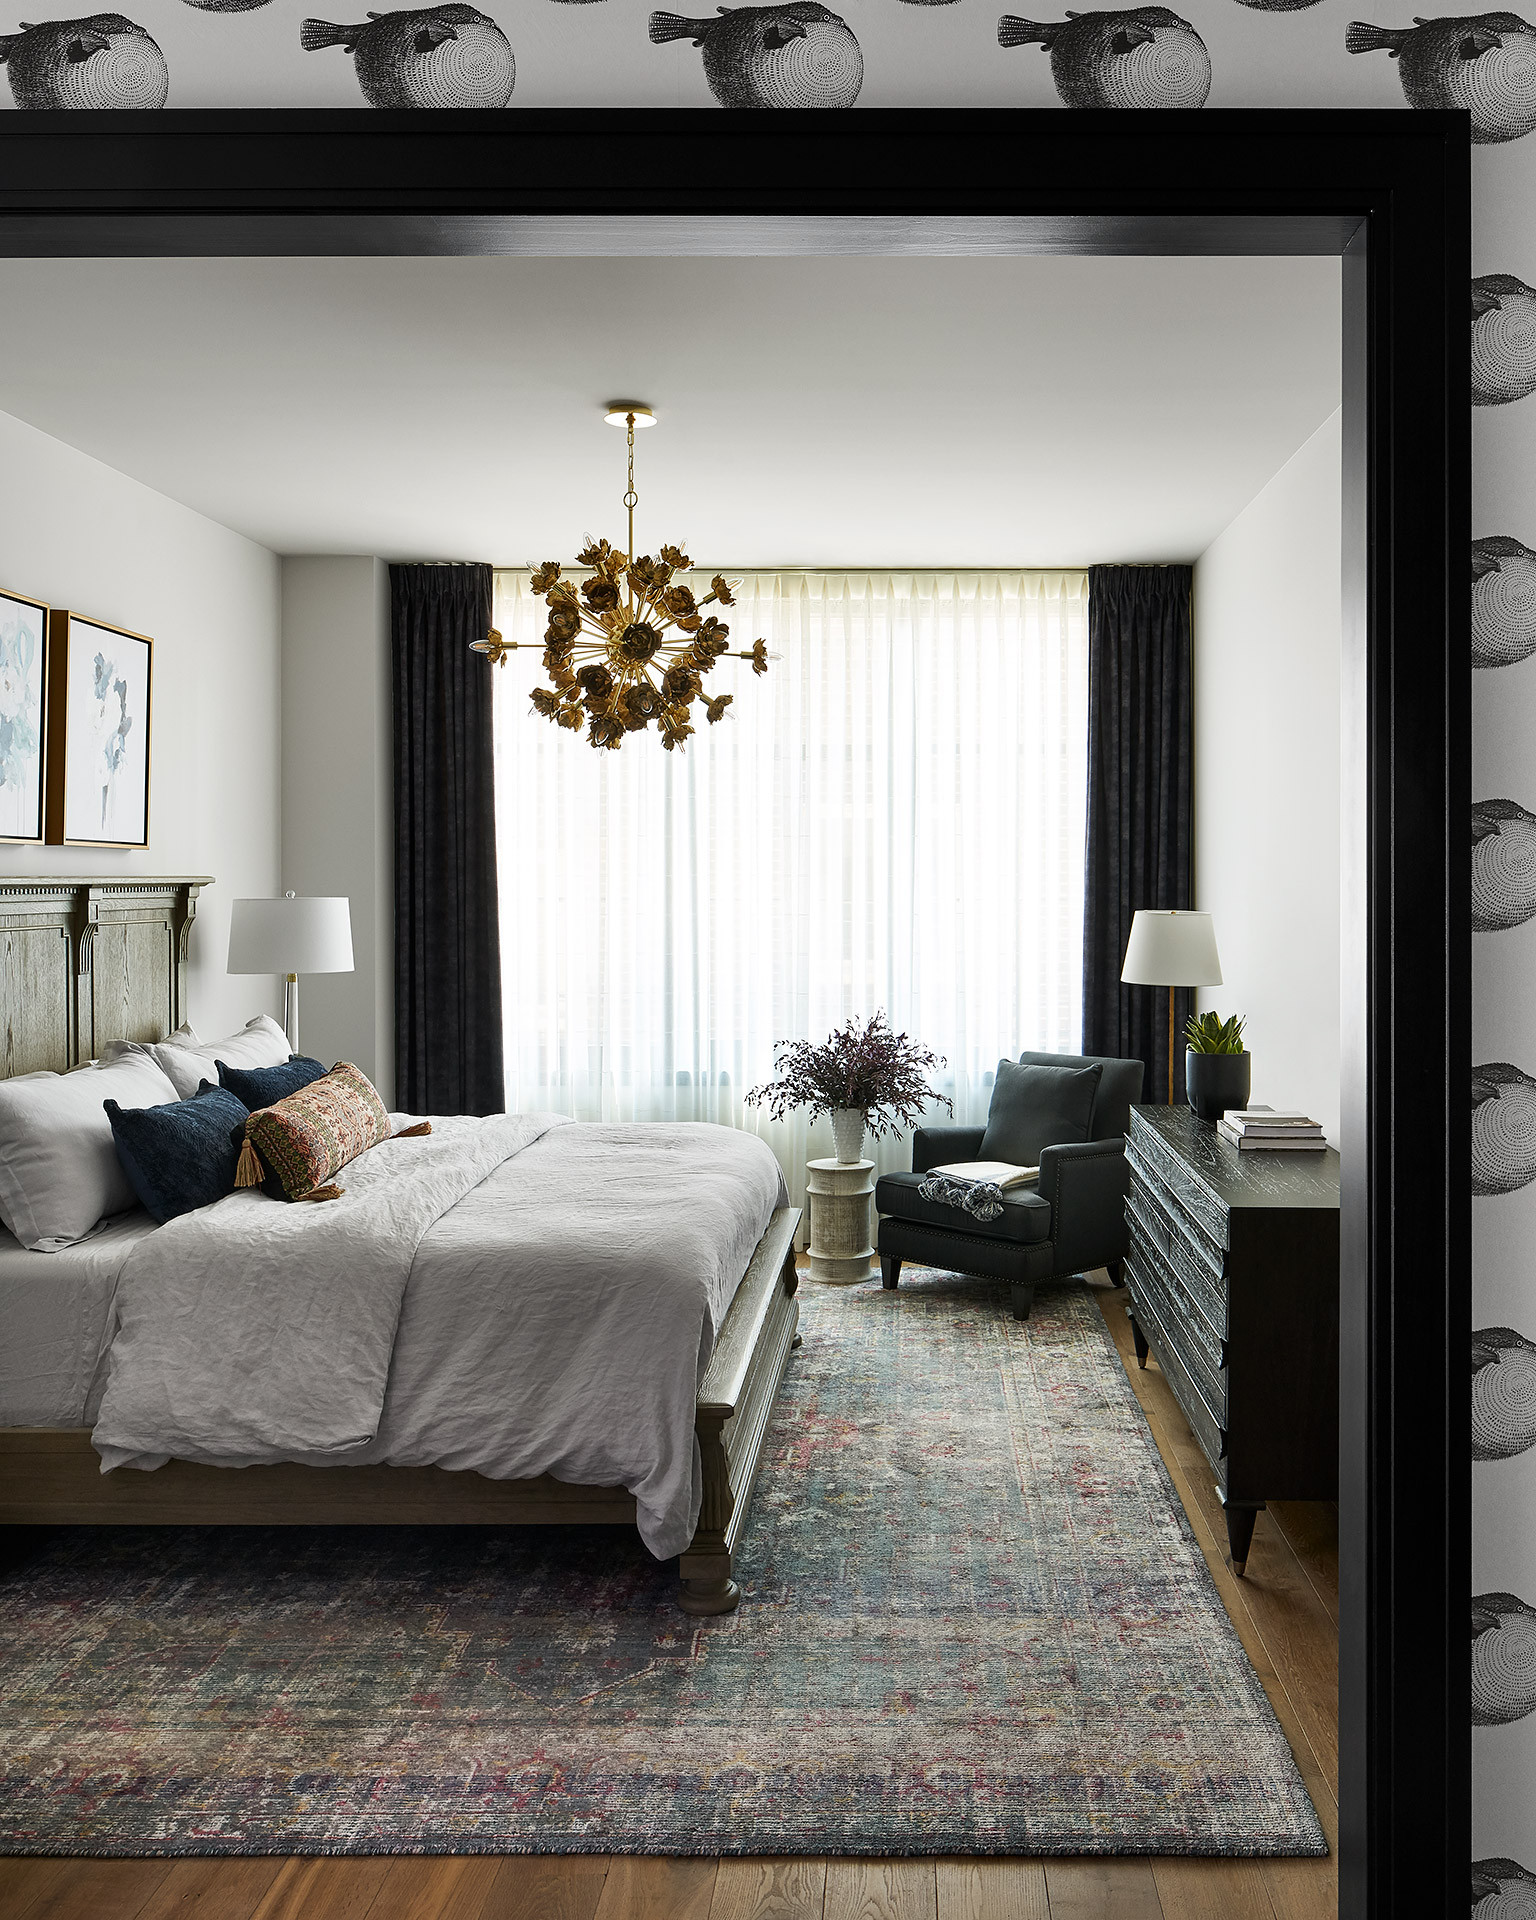 Phòng ngủ thiết kế theo phong cách chiết trung phóng khoáng, bổ sung thảm trải sàn, đèn thả trần và gối tựa nhiều màu sắc trầm ấm bổ sung cho 2 gam màu trắng đen chủ đạo.